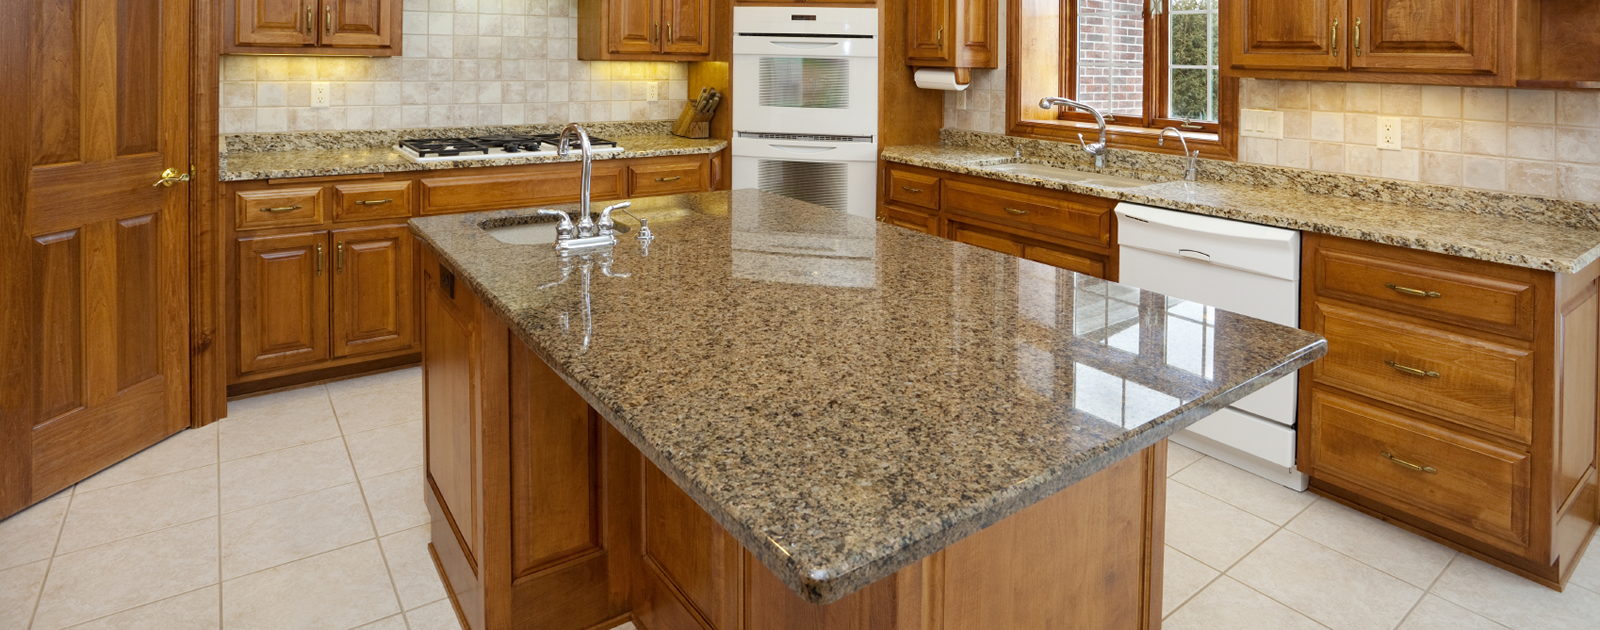 granite backsplash, kitchen design